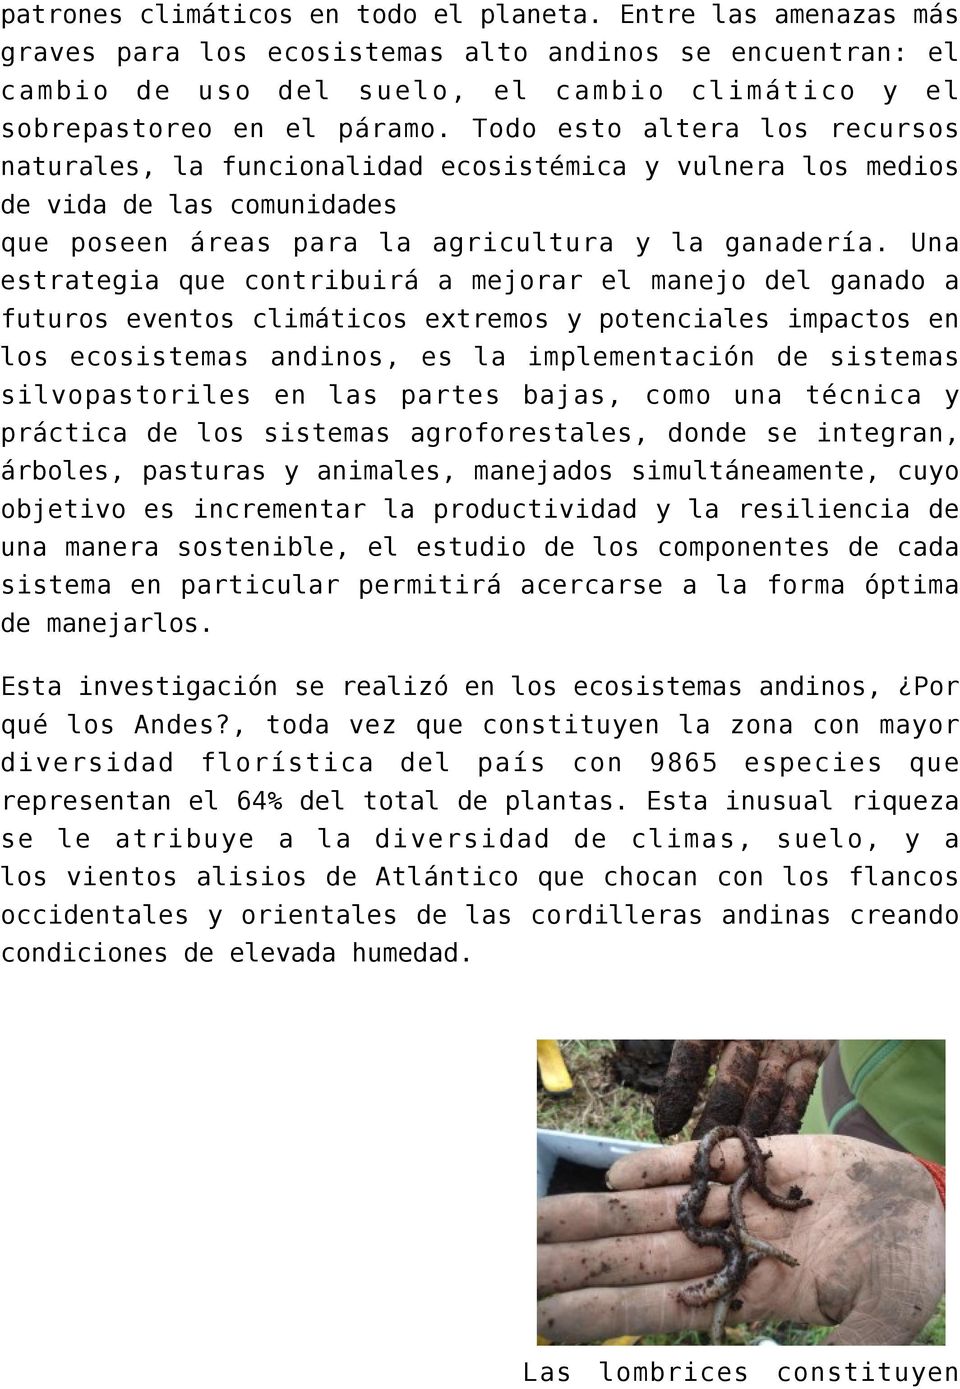 Una estrategia que contribuirá a mejorar el manejo del ganado a futuros eventos climáticos extremos y potenciales impactos en los ecosistemas andinos, es la implementación de sistemas silvopastoriles